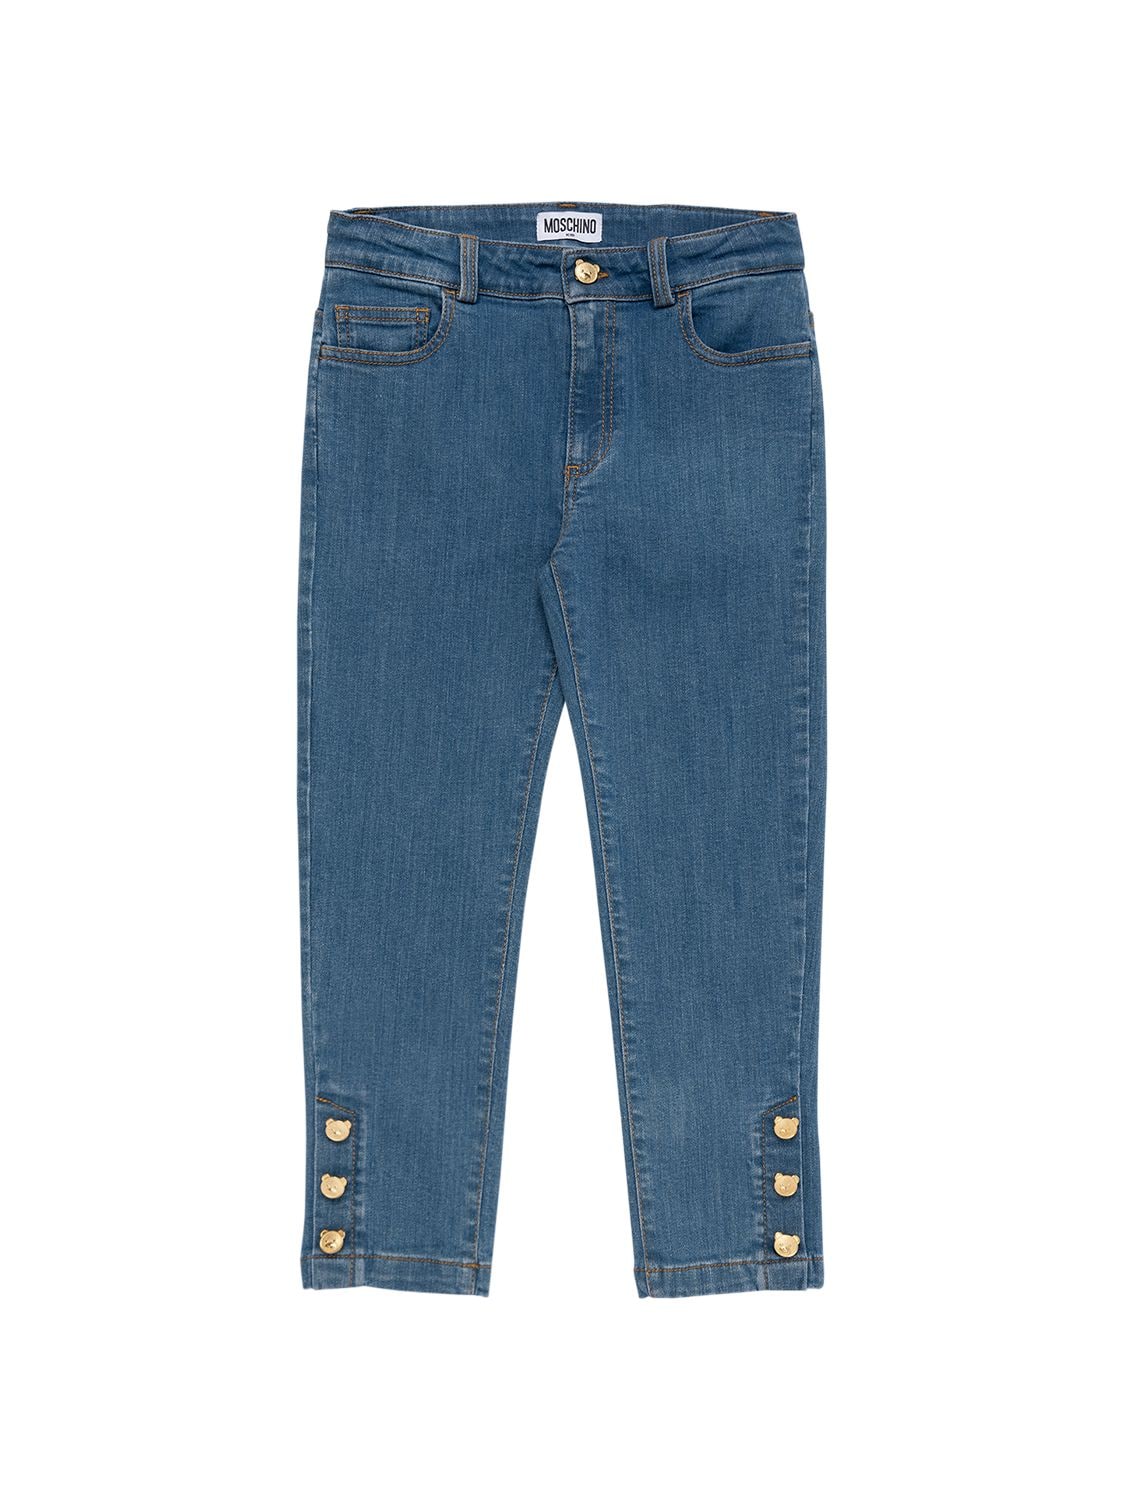 Moschino Kids' Washed Stretch Cotton Denim Jeans W/logo